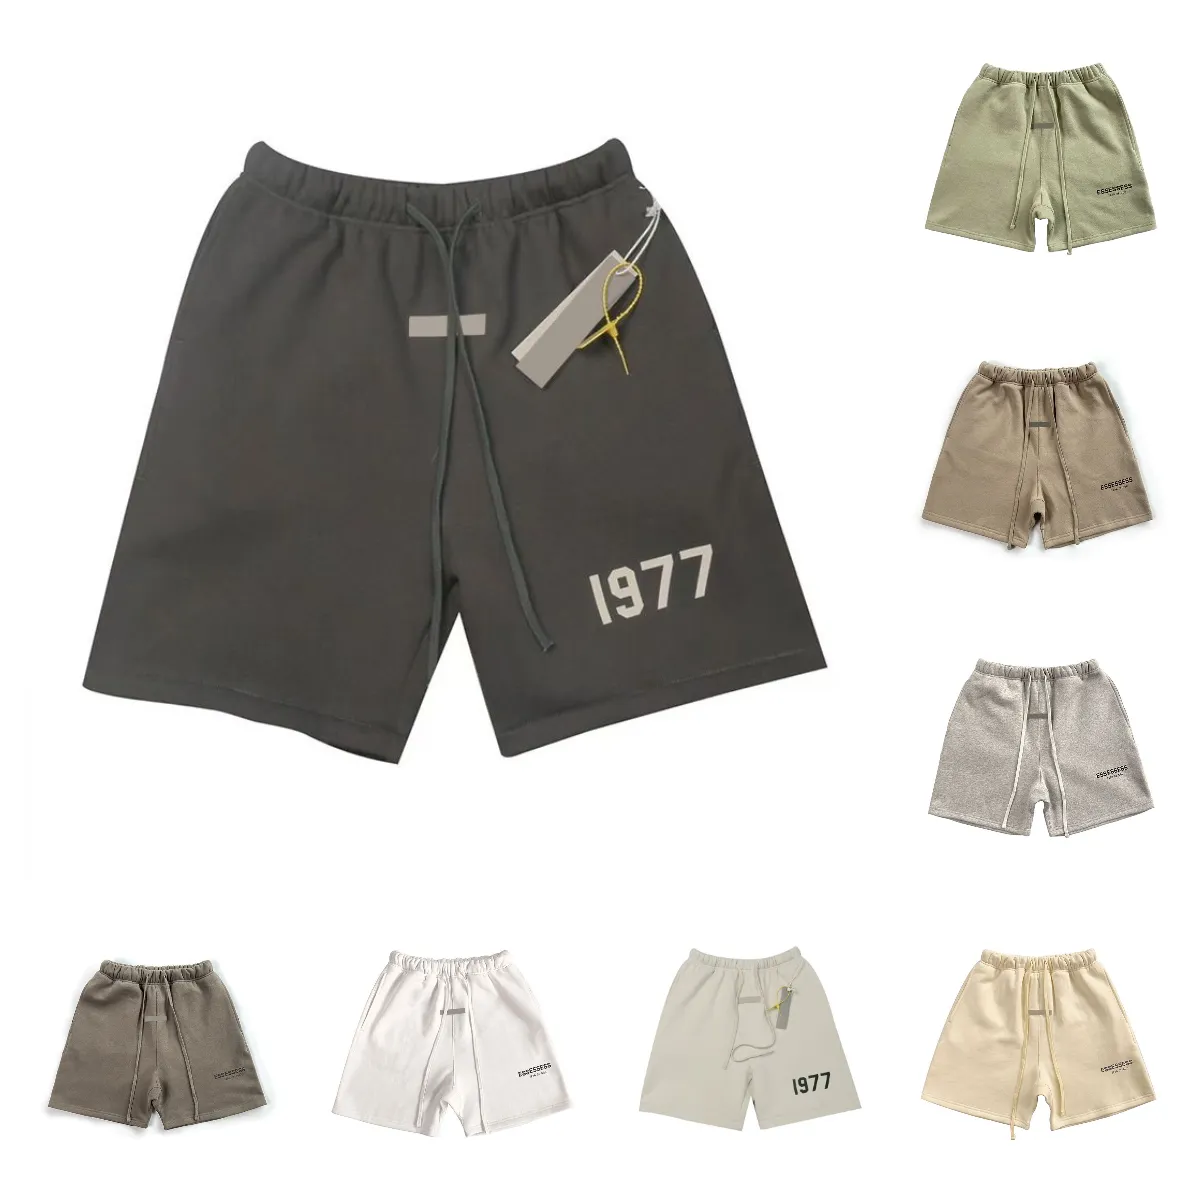 Ontwerper kort voor man heren zomerbord shorts broek casual brief mannen luxe sport van hoge kwaliteit grijs